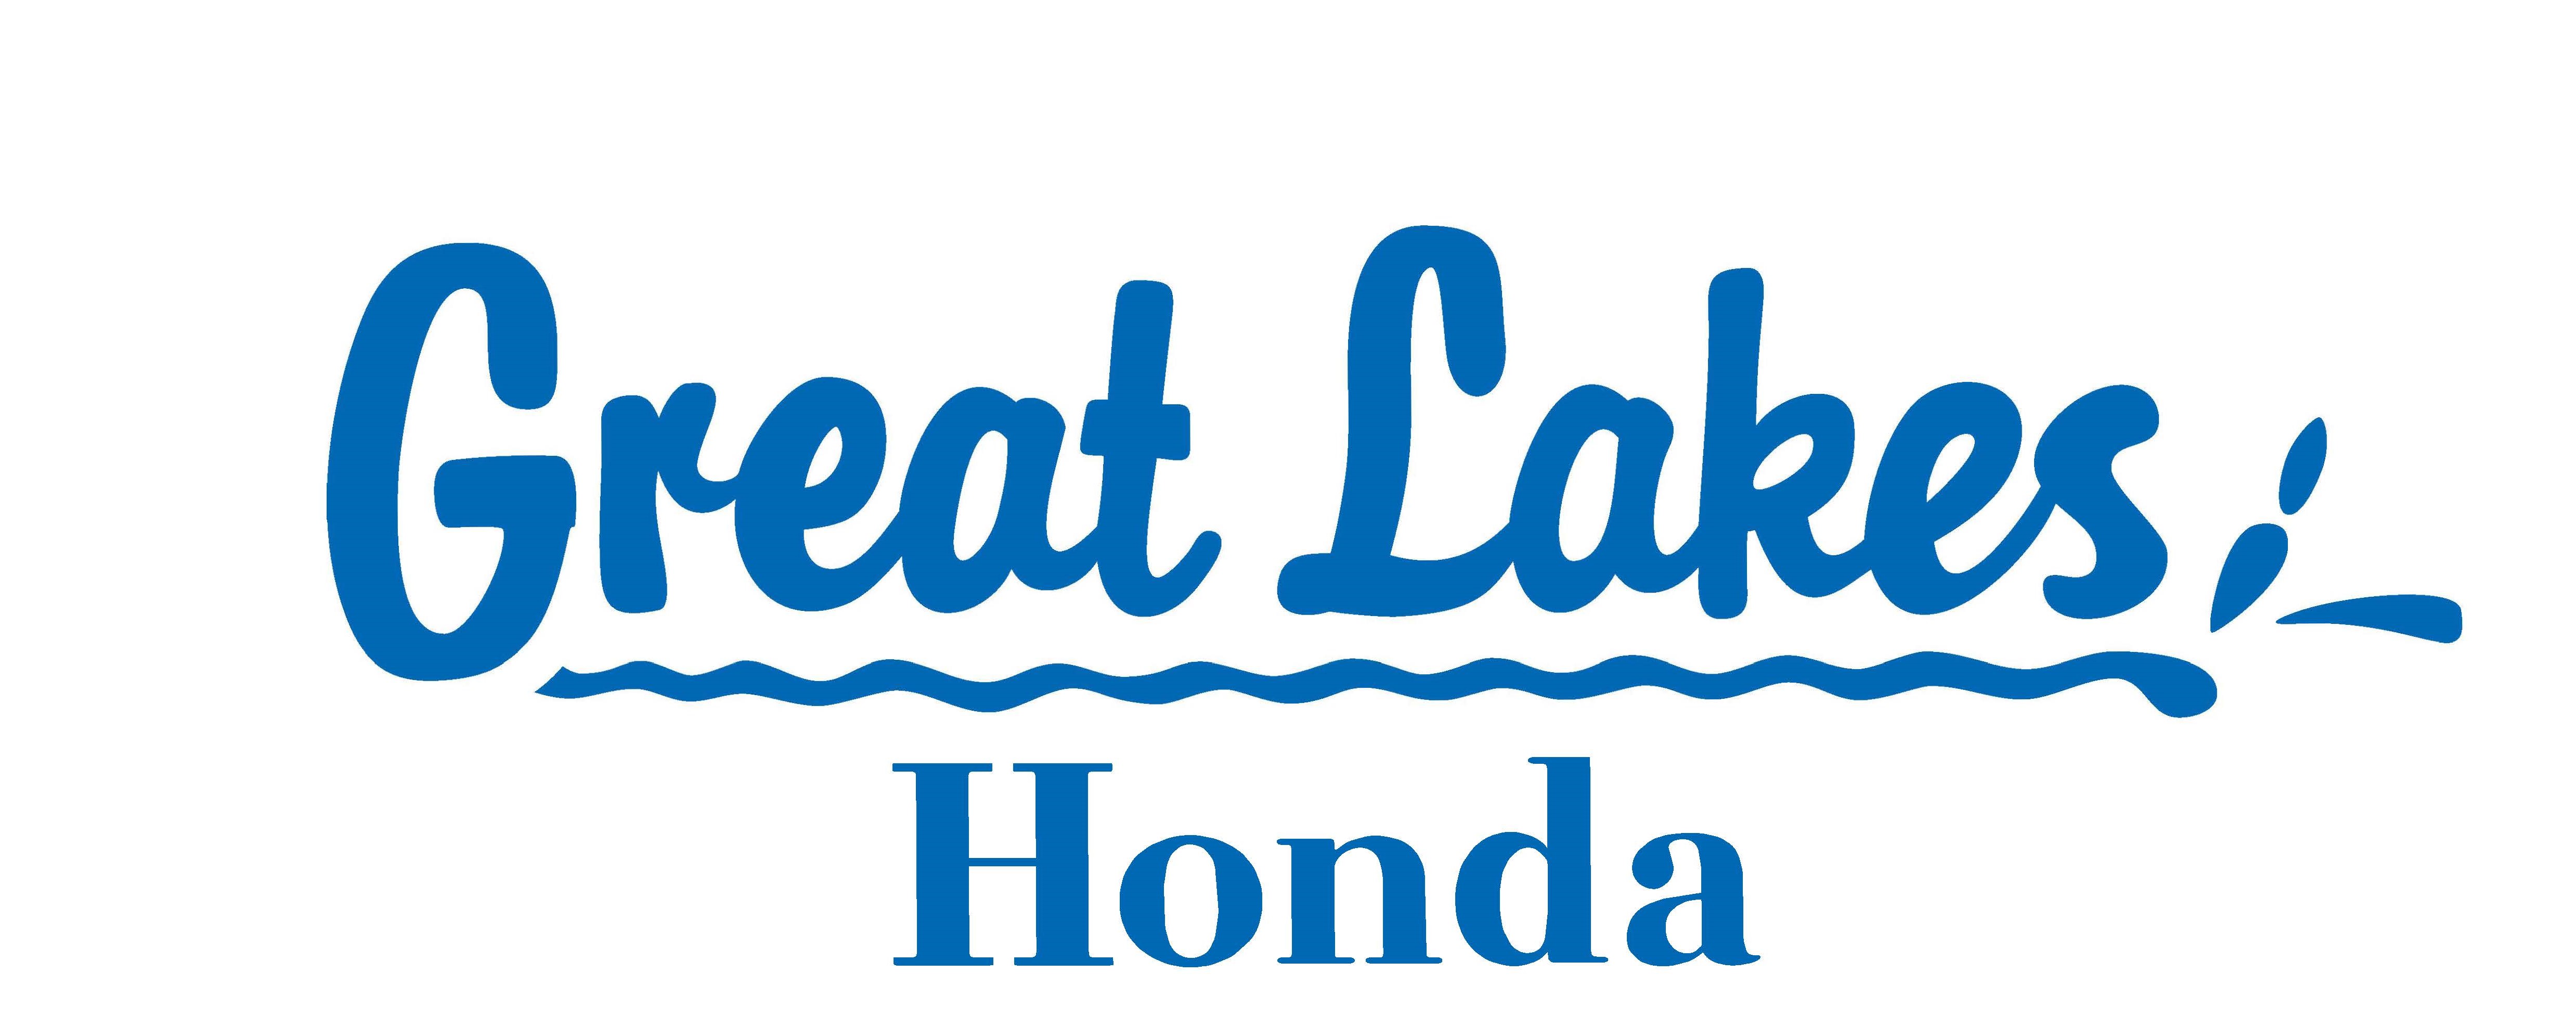 A. Great Lakes Honda (Presentación)